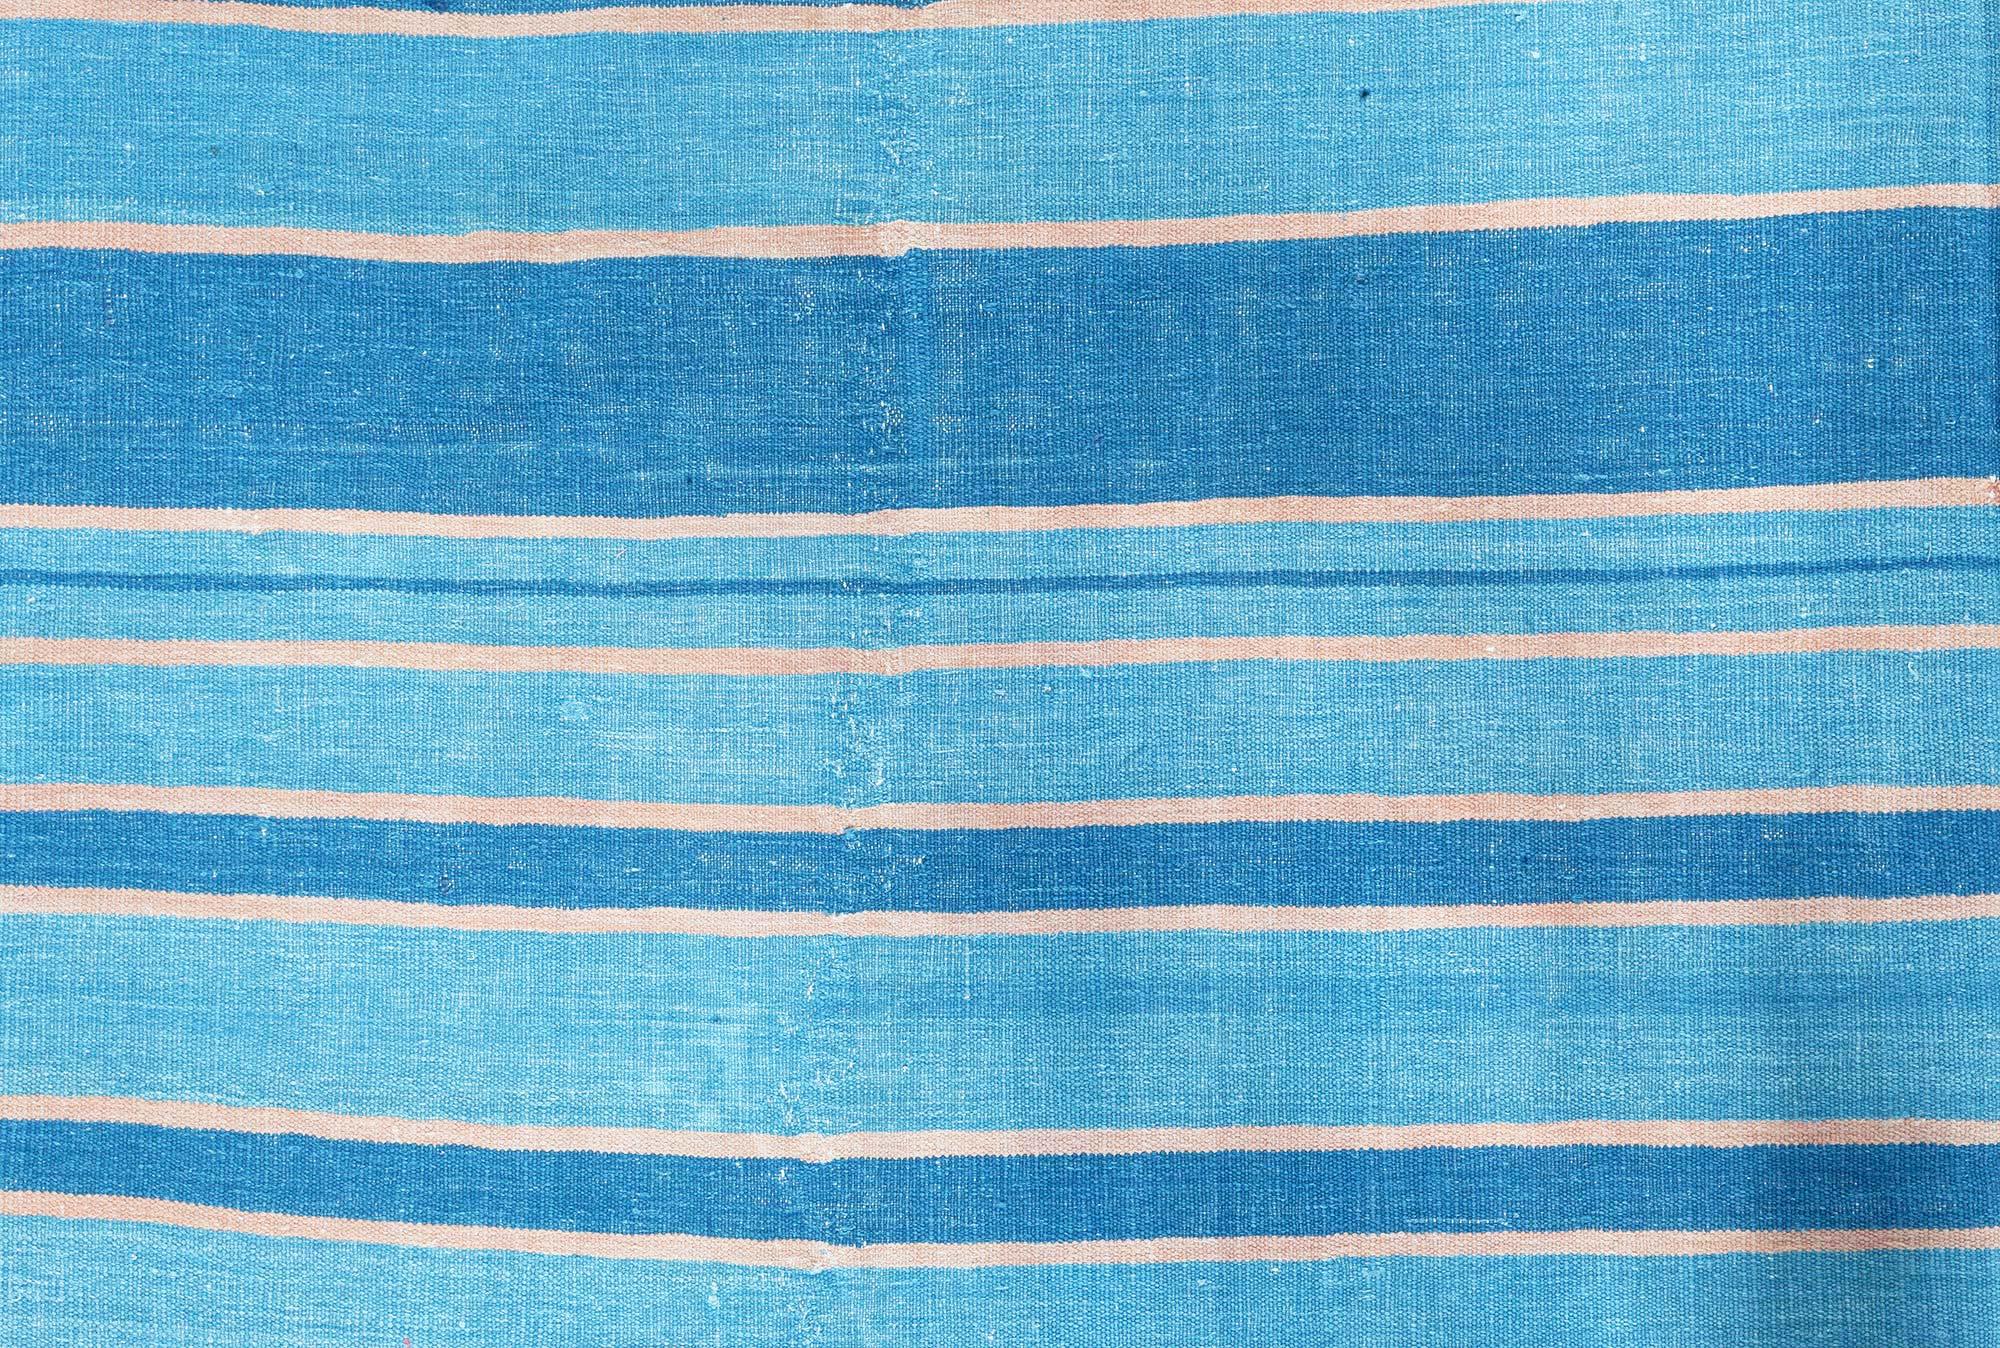 Vintage Indian Dhurrie gestreifter blauer Teppich
Größe: 14'9